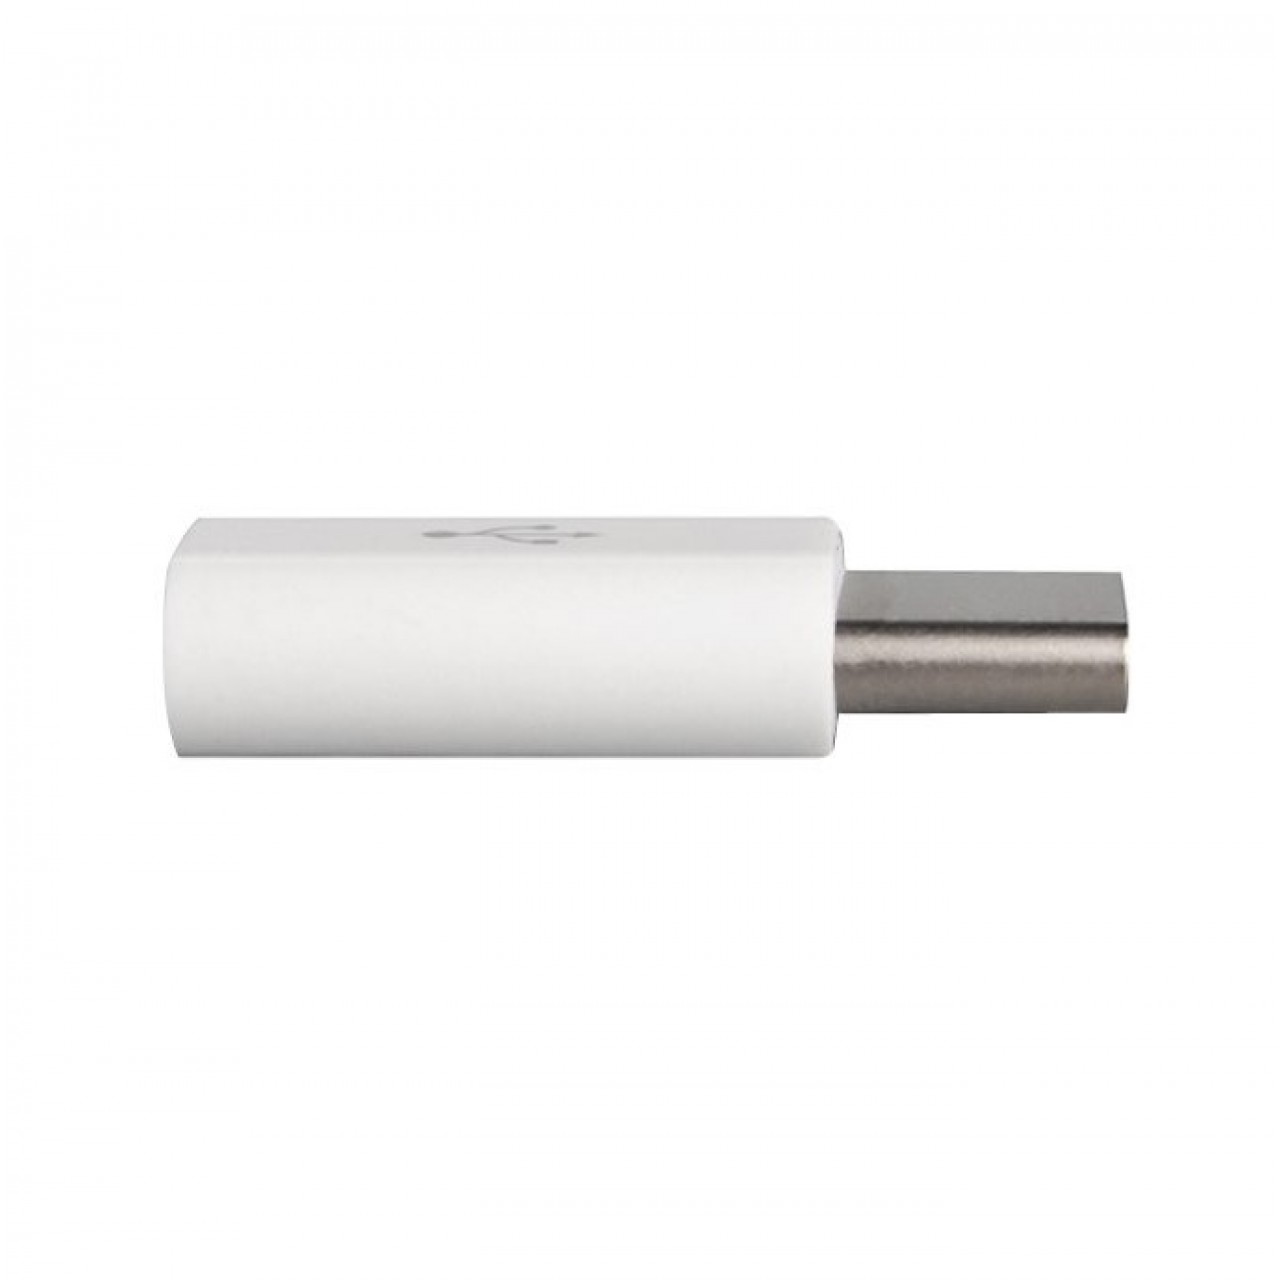 Αντάπτορας Micro USB to USB Type C - 3655 - Λευκό - OEM